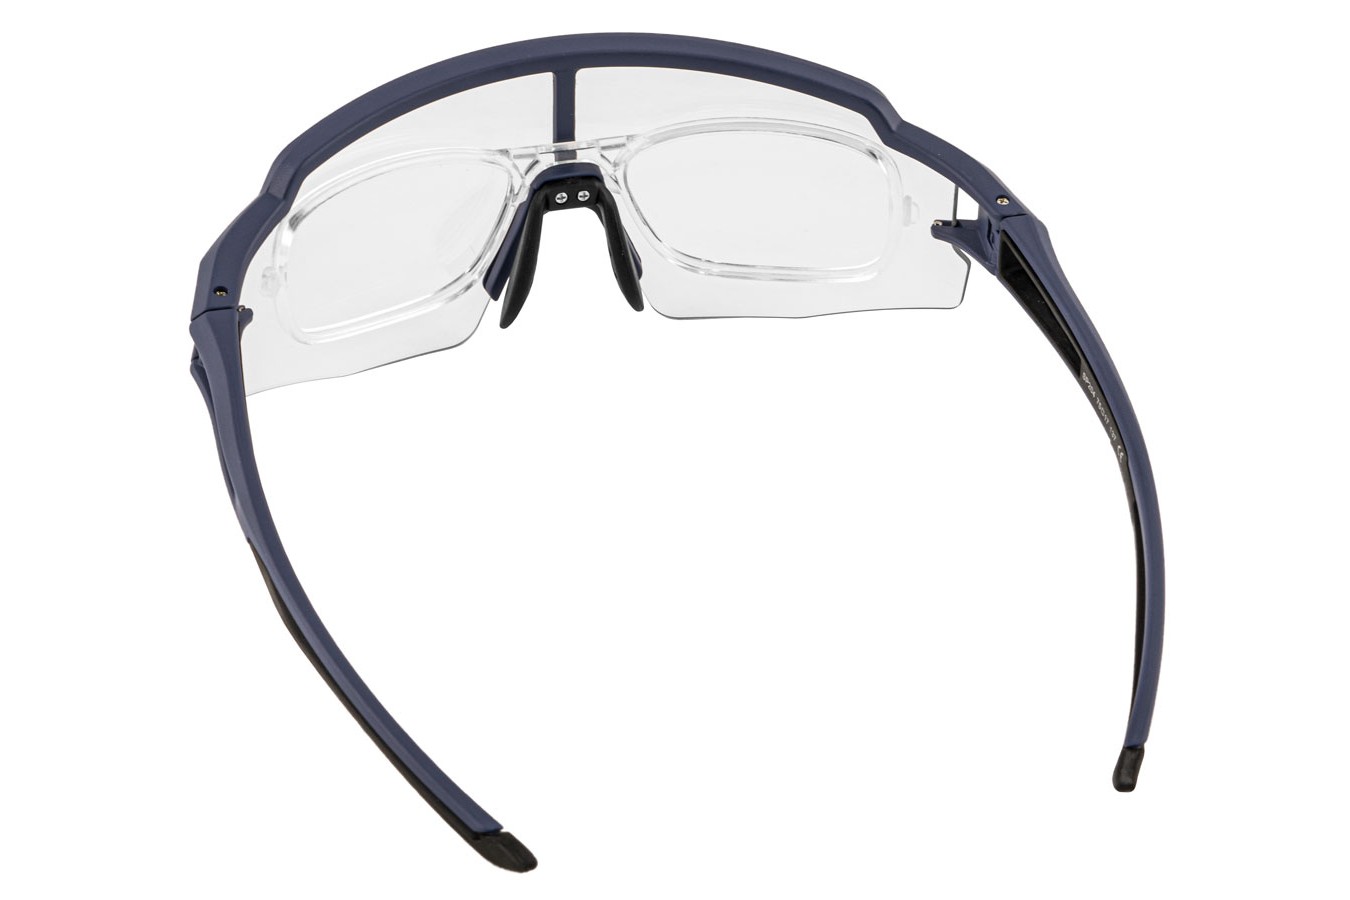 Óculos para ciclistas azul/preto com lente fotocromática - Rockbros